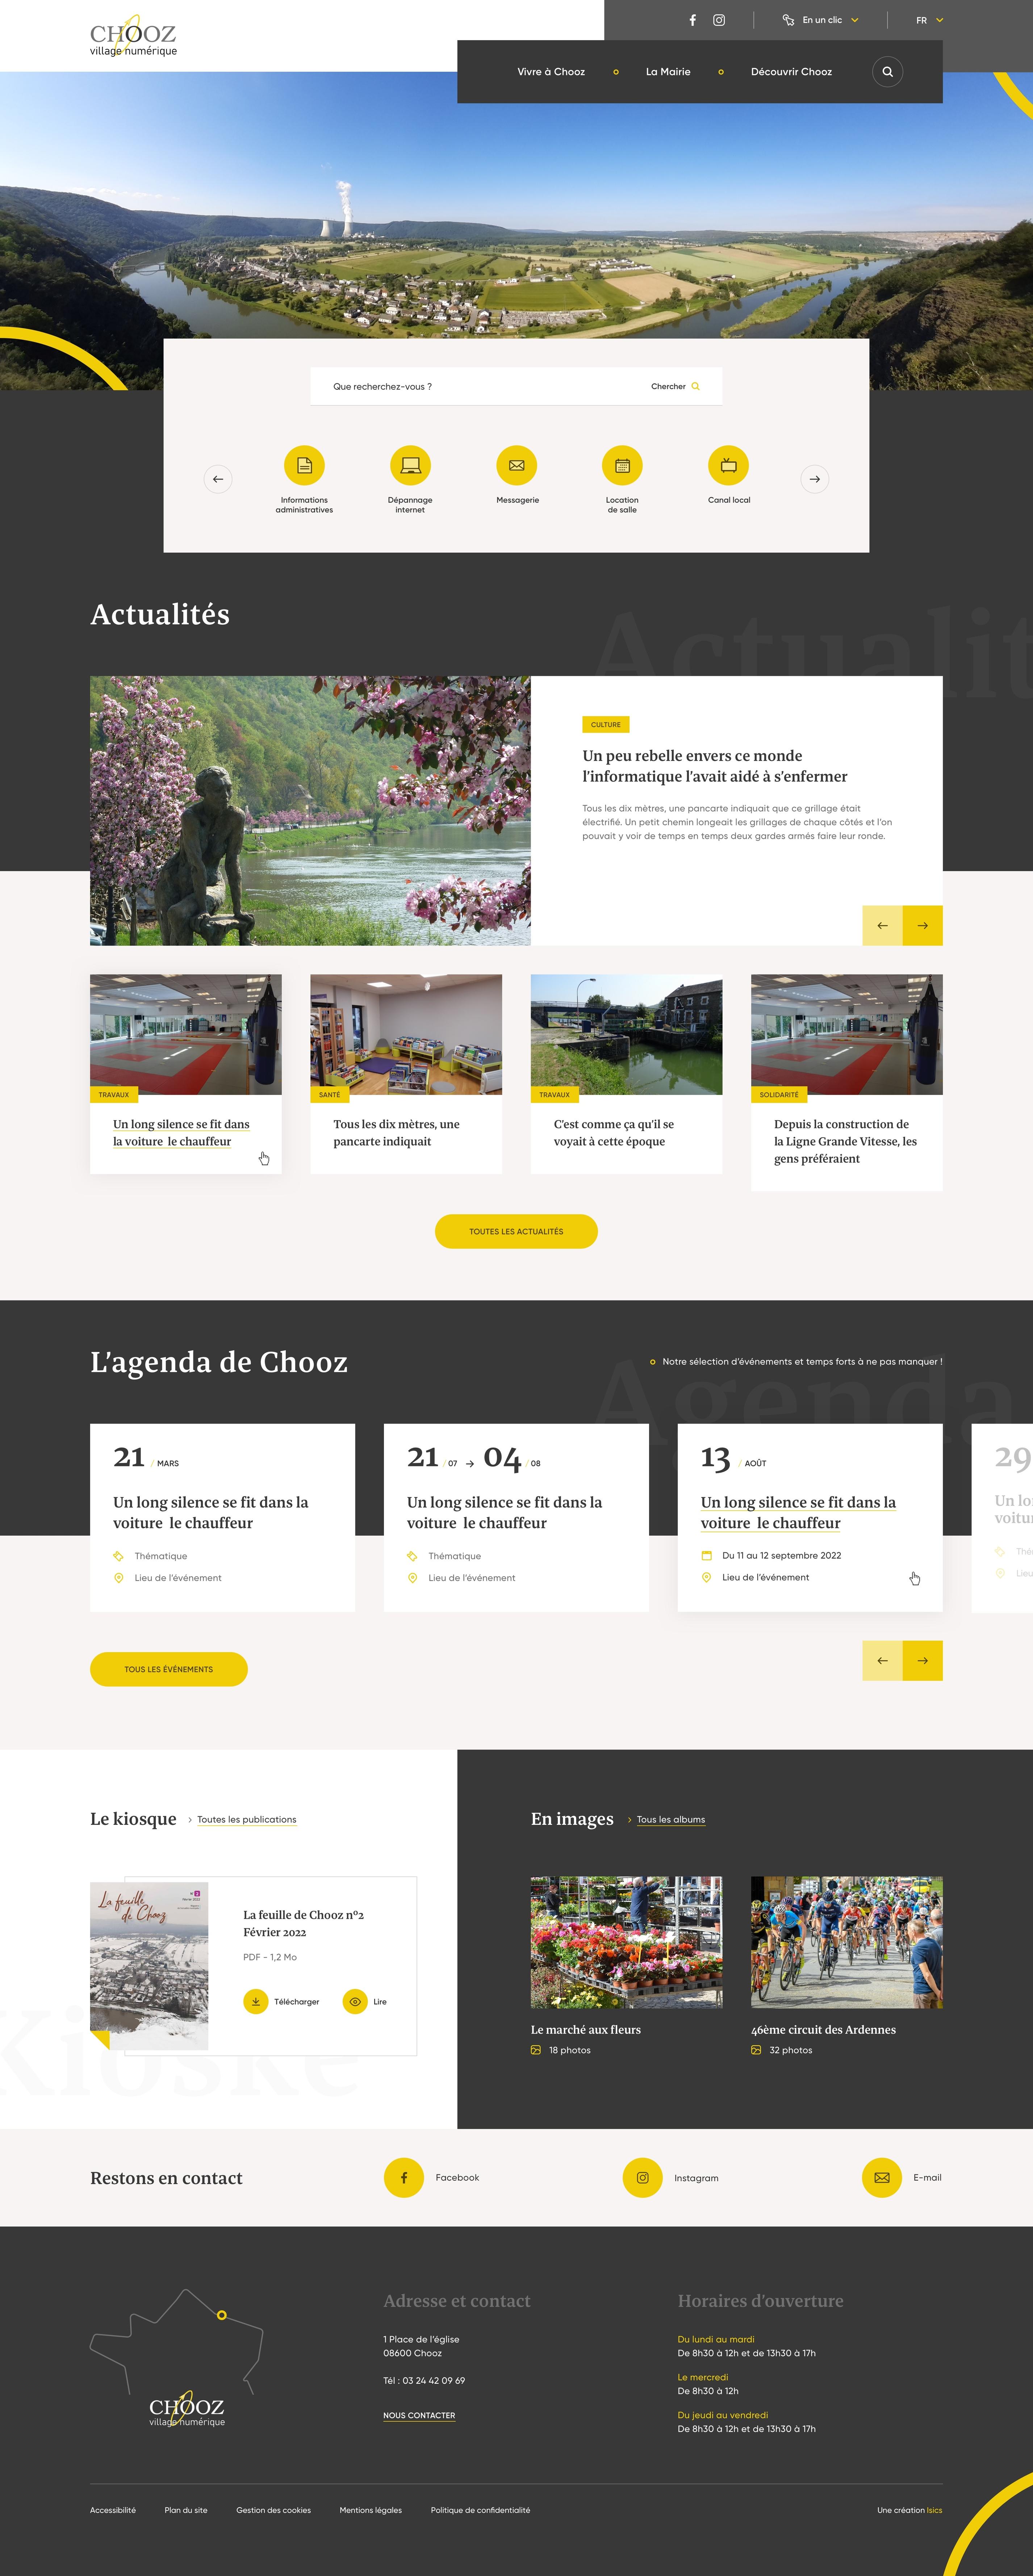 Version desktop du site vitrine de la commune de Chooz réalisé par l'agence web ISICS